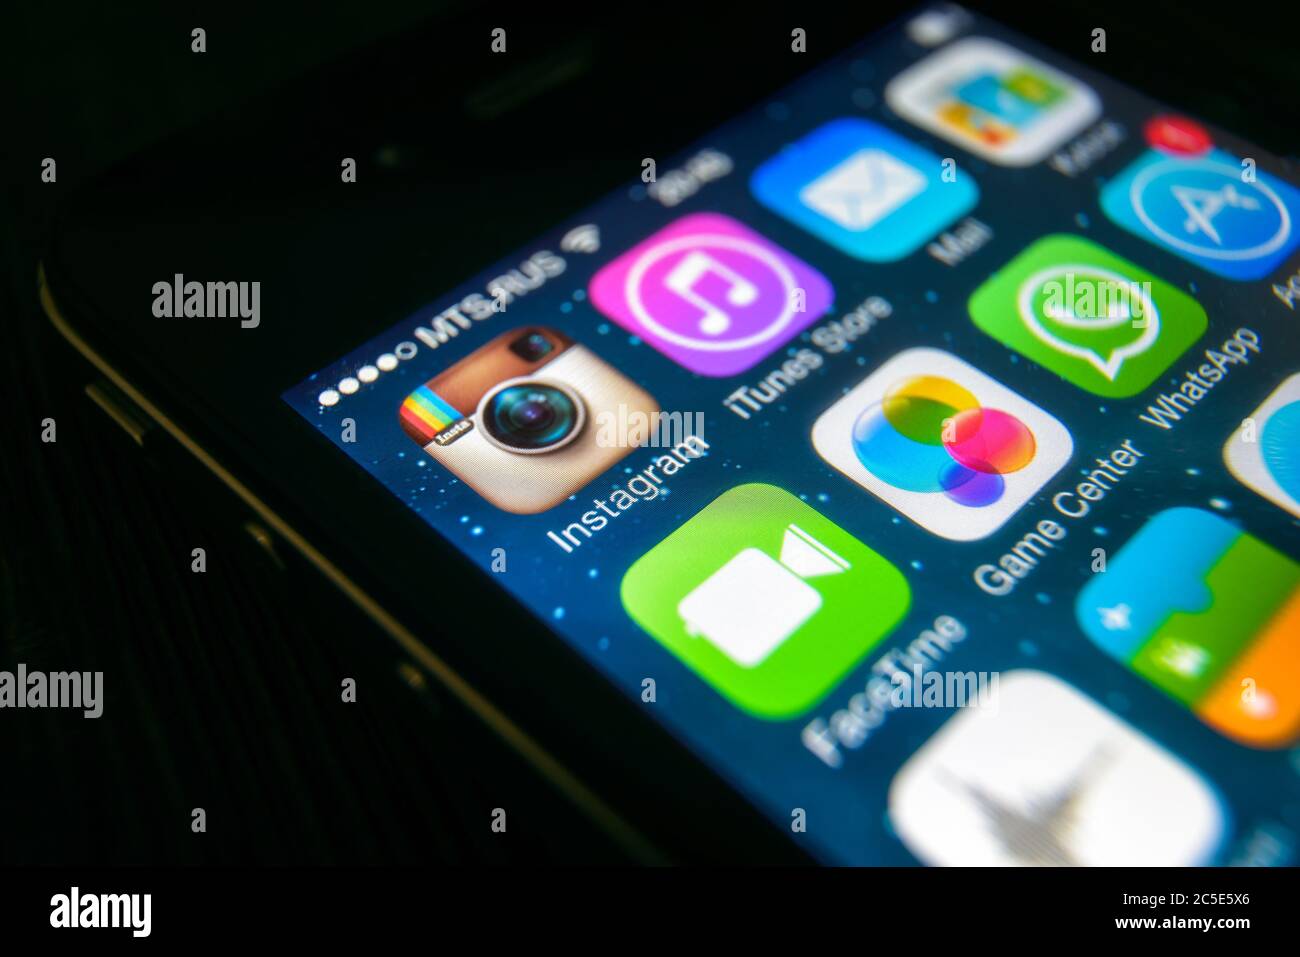 Mosca - 11 marzo 2019: Primo piano del logo Instagram sullo schermo dell'iPhone. Icona dell'applicazione dei social media Instagram sullo smartphone, visualizzazione macro. Instagram e. Foto Stock